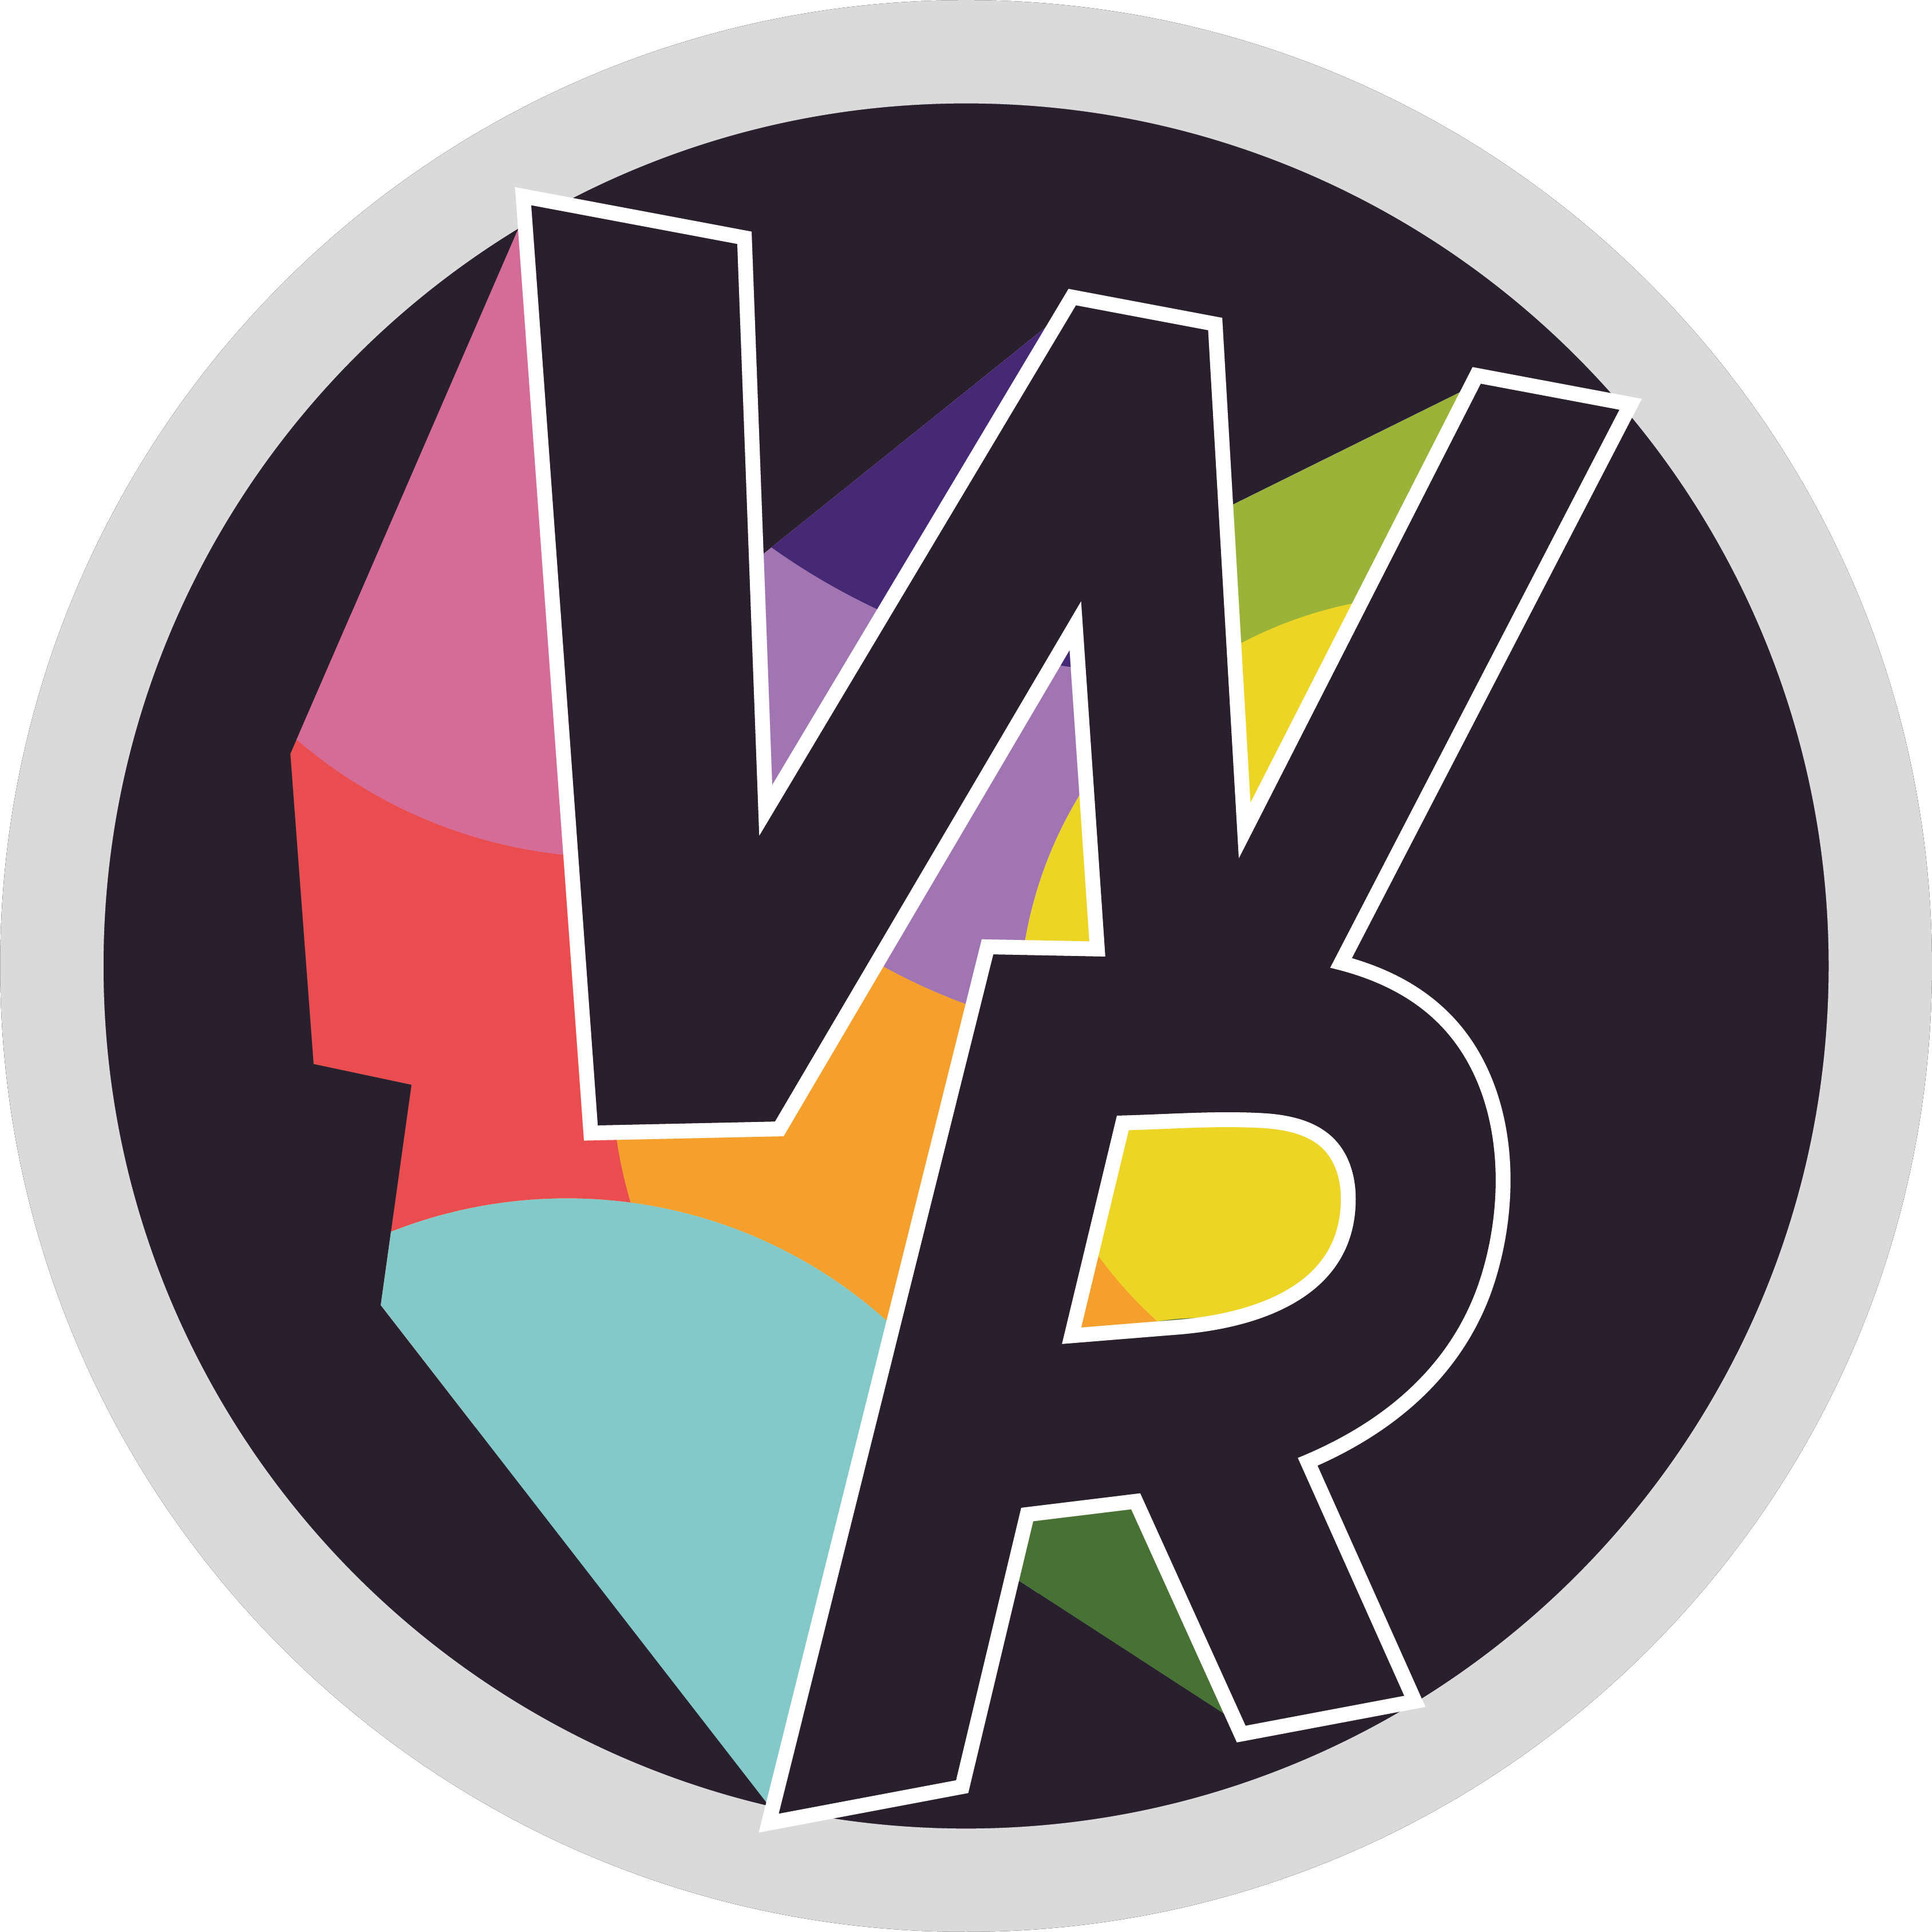 WRFM - Outside Broadcasts